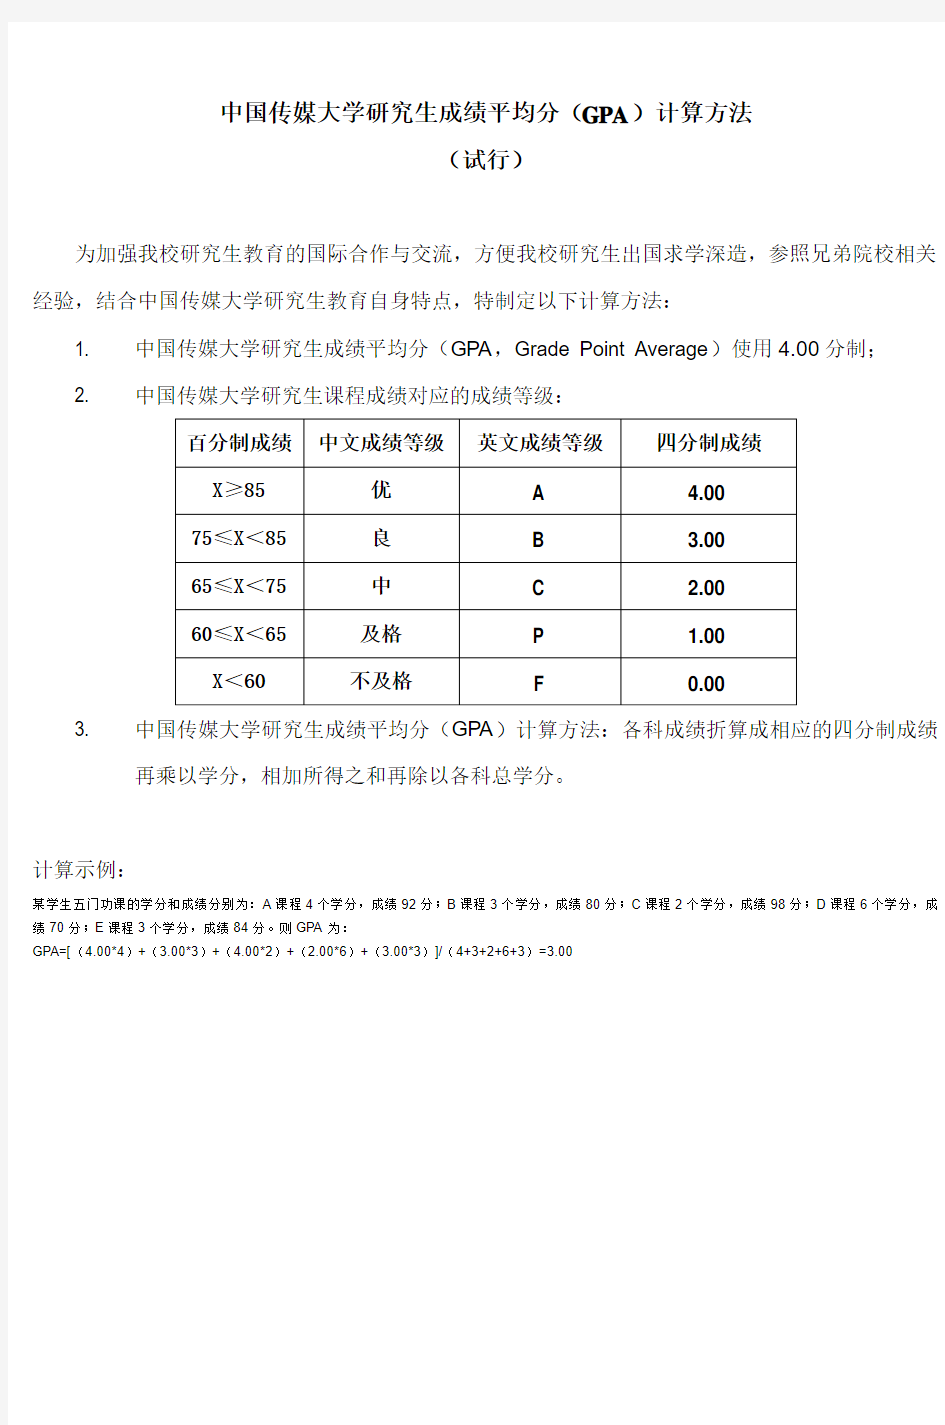 中国传媒大学研究生成绩平均分(GPA)计算